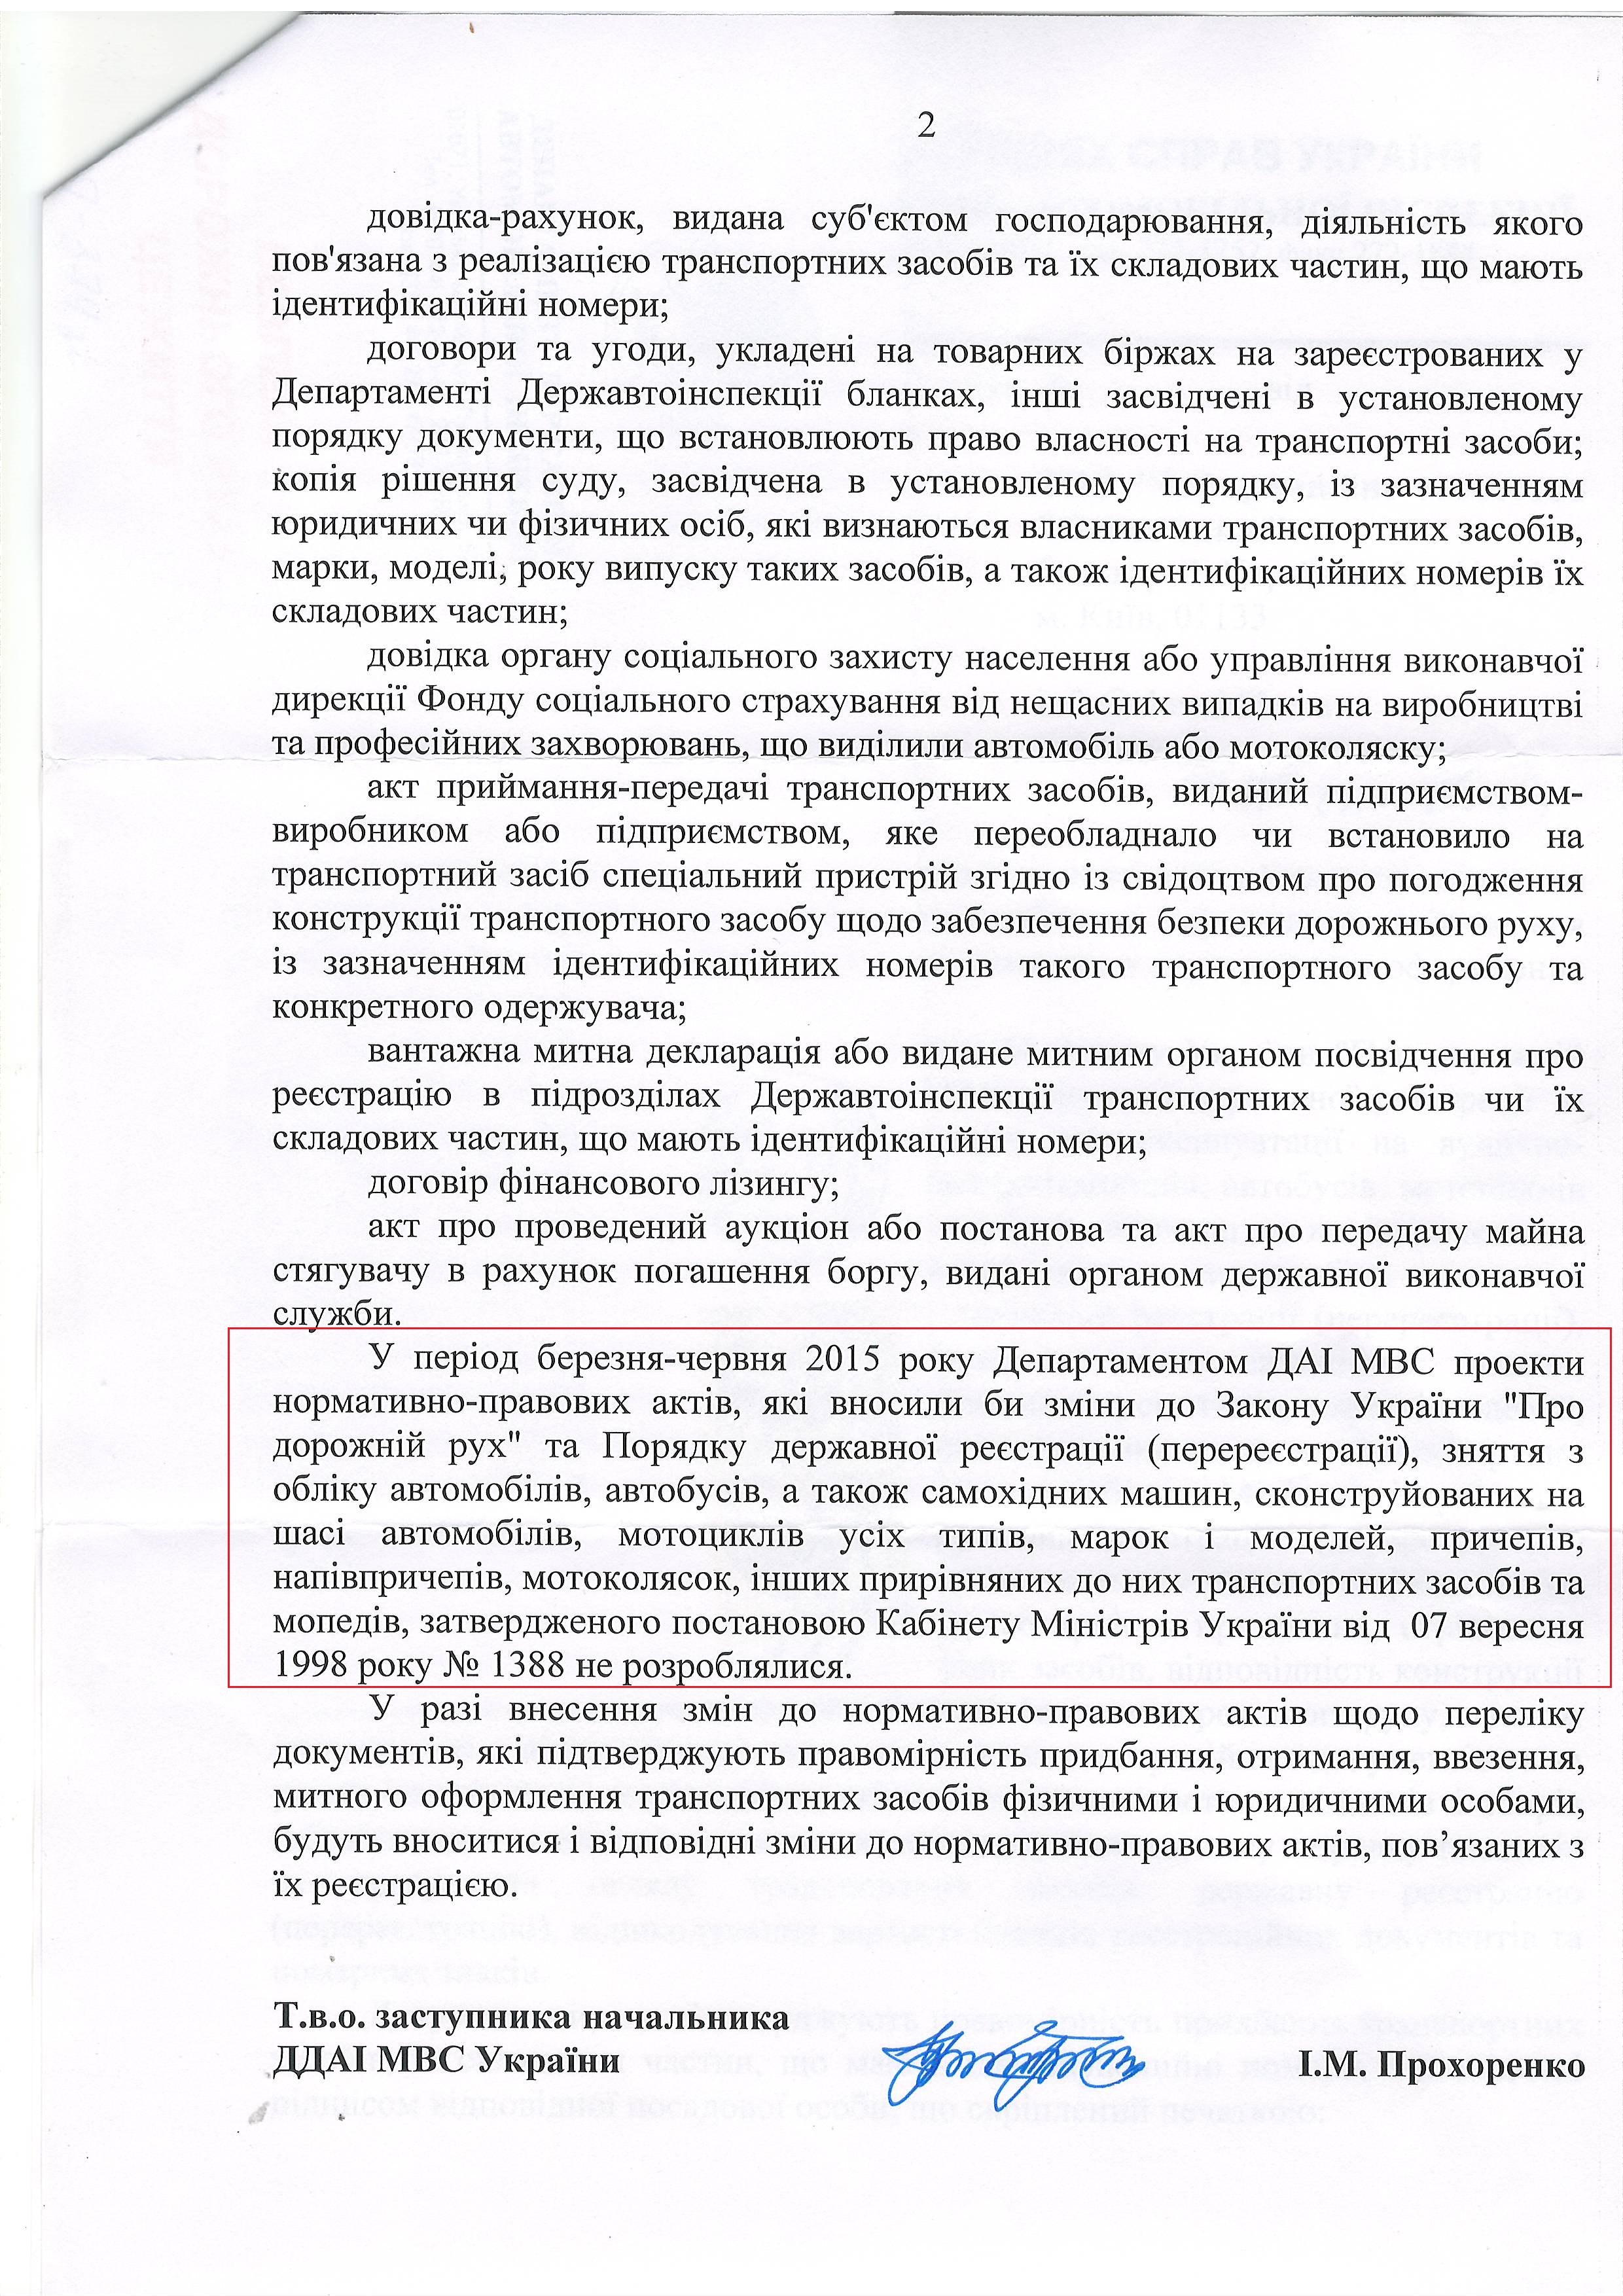 Лист міністерства внутрішніх справ України від 14 липня 2015 року